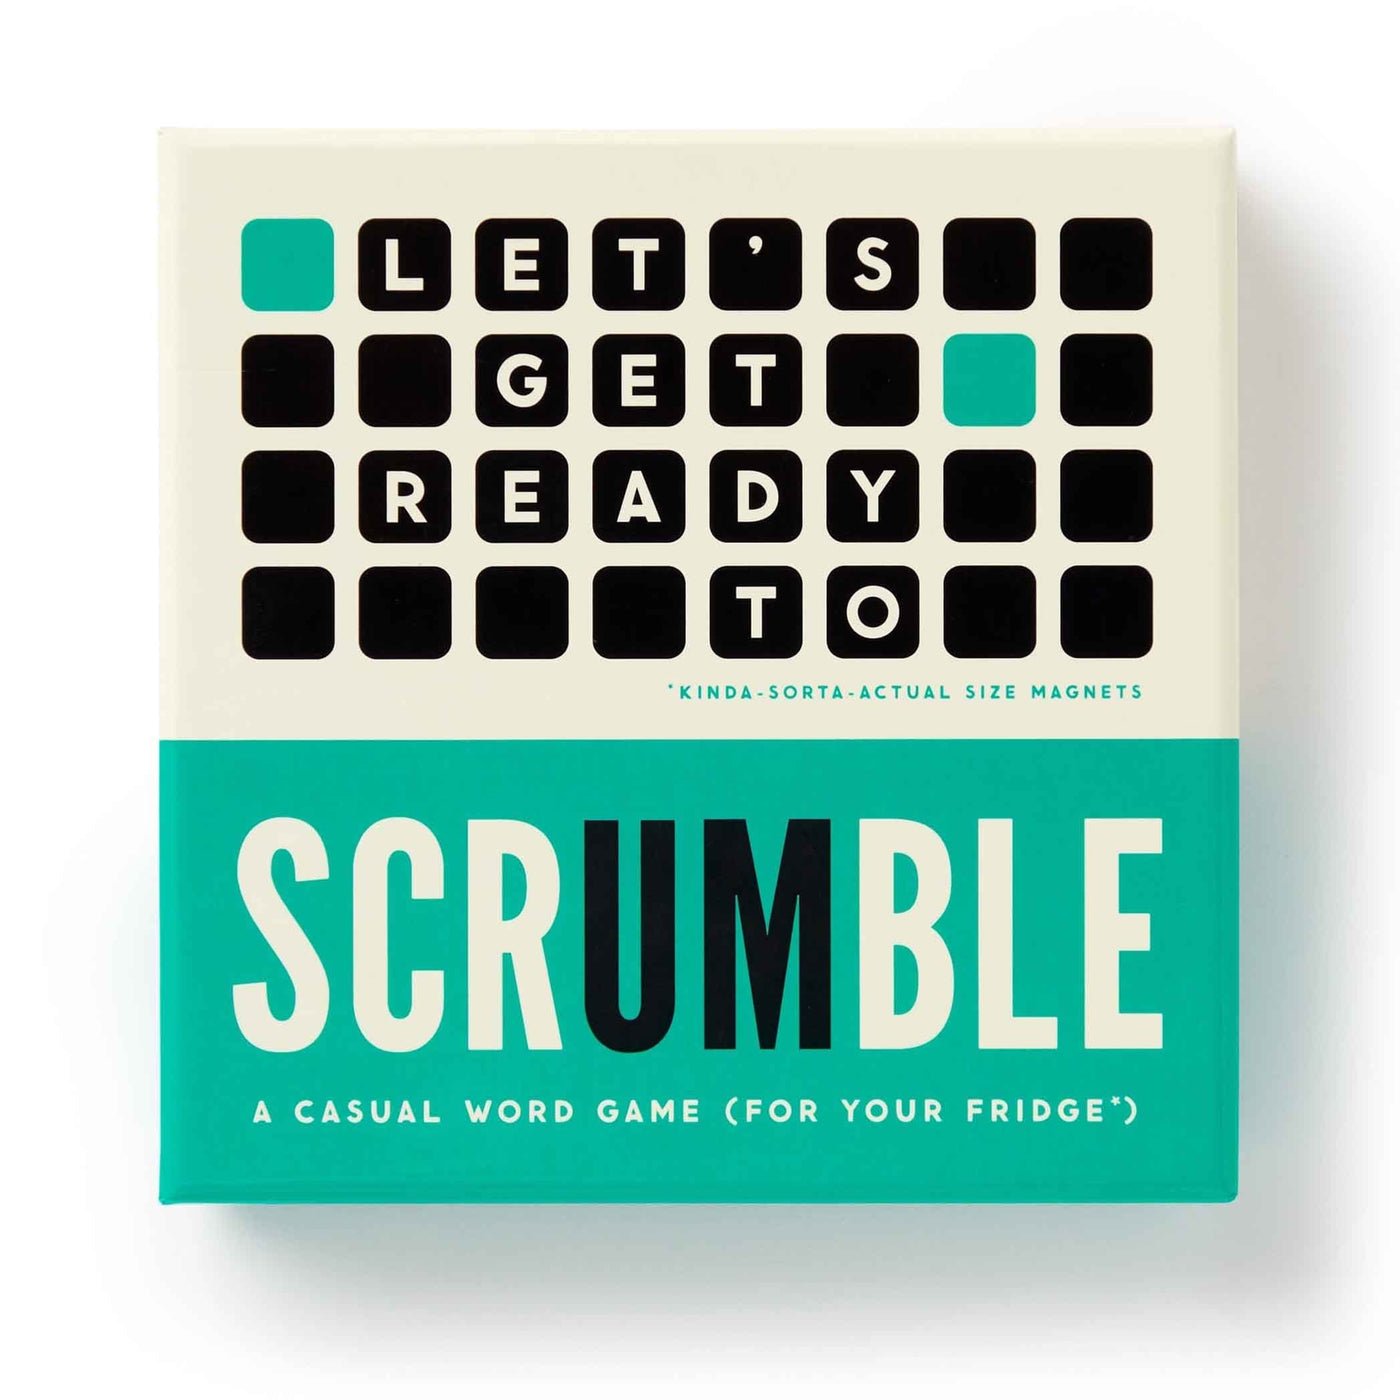 Jouez au Scrumble sans contraintes avec la version magnétique Brass Monkey. Créez des mots sur le tableau magnétique à votre rythme, une solution ludique et pratique pour tous.